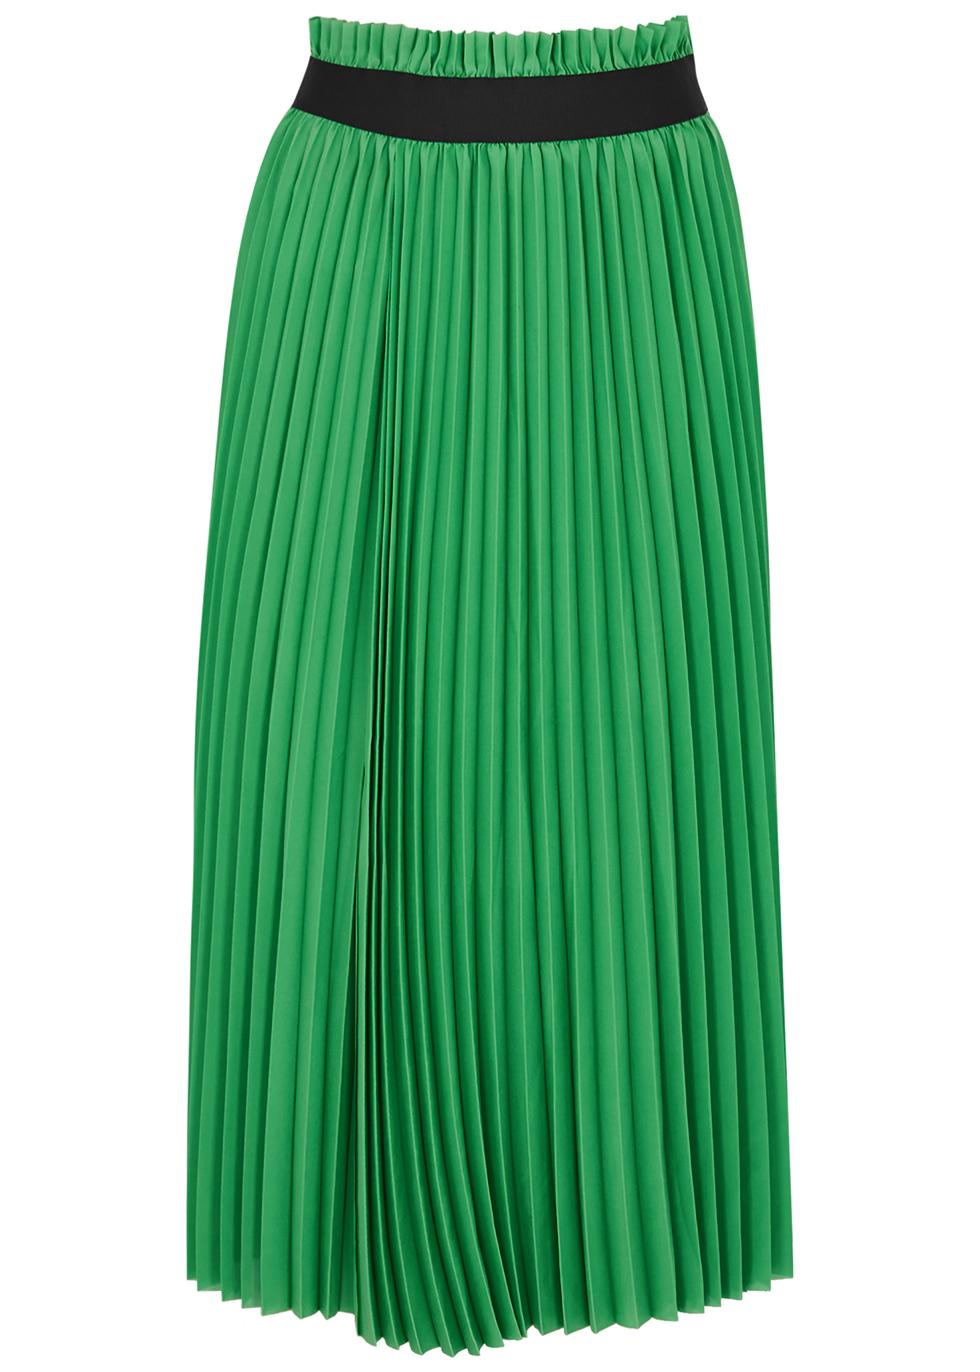 Mia green pleated midi skirt by DAY BIRGER ET MIKKELSEN